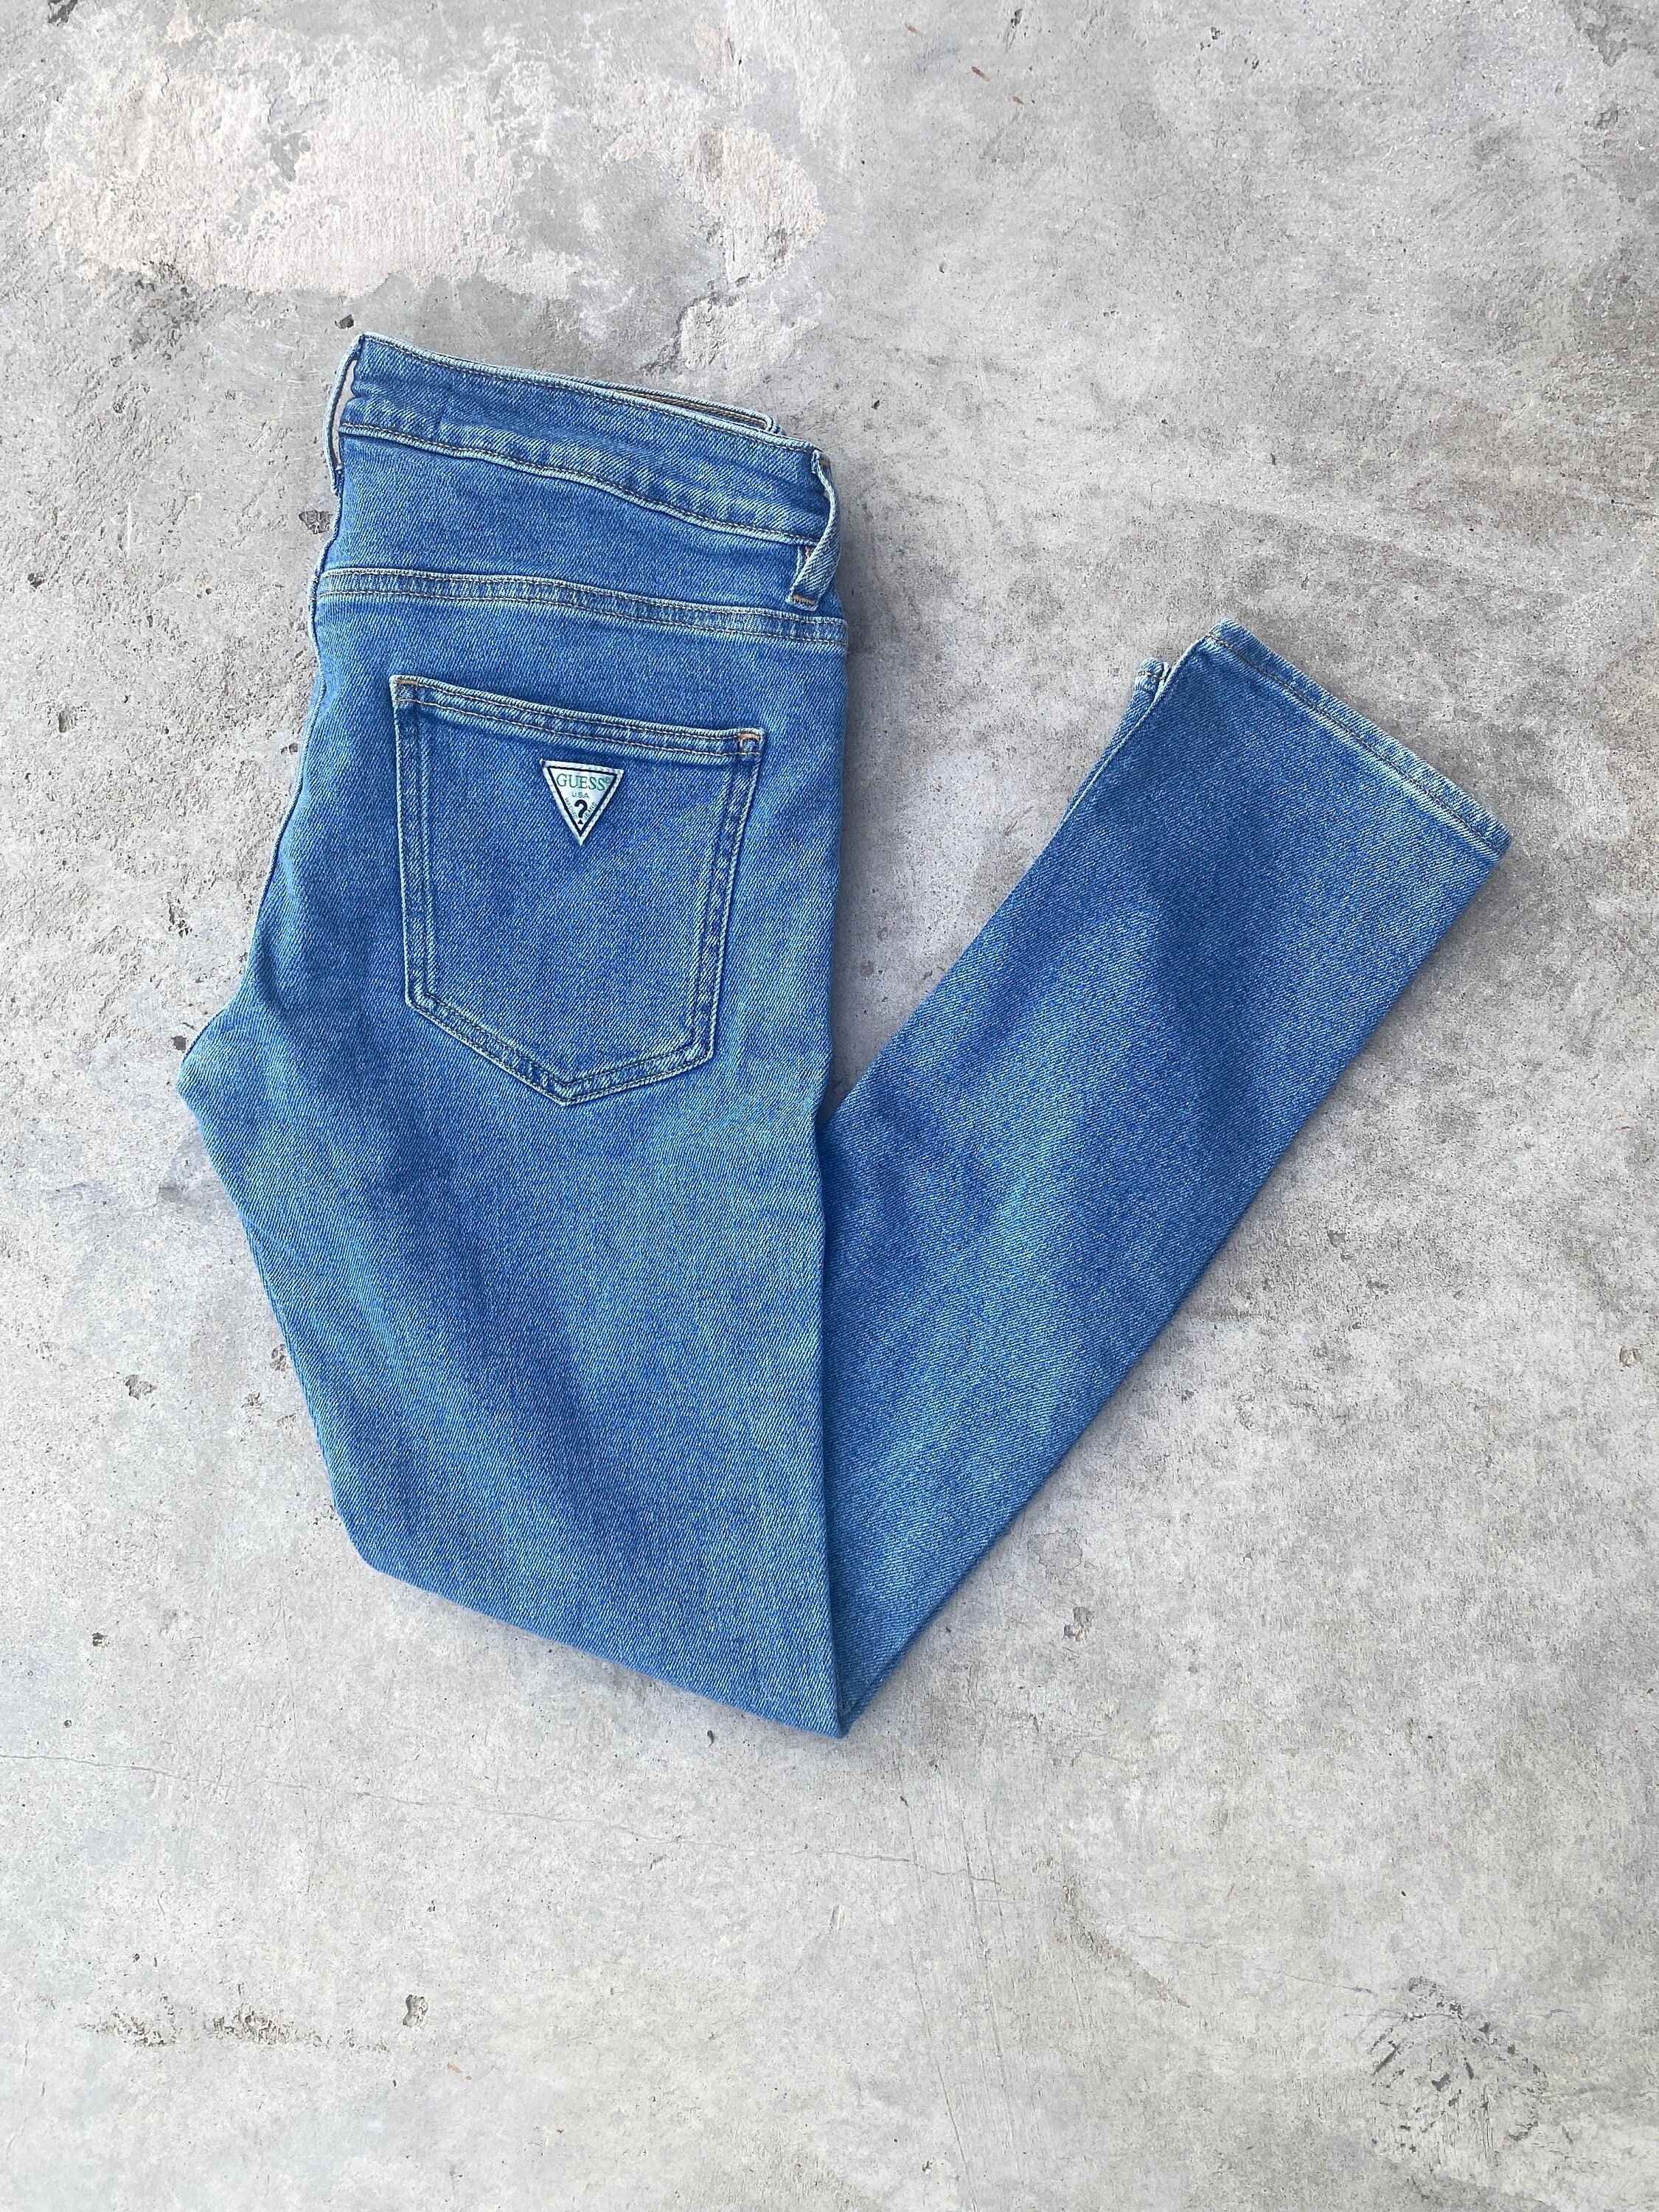 Blue Denim Jeans -  Canada